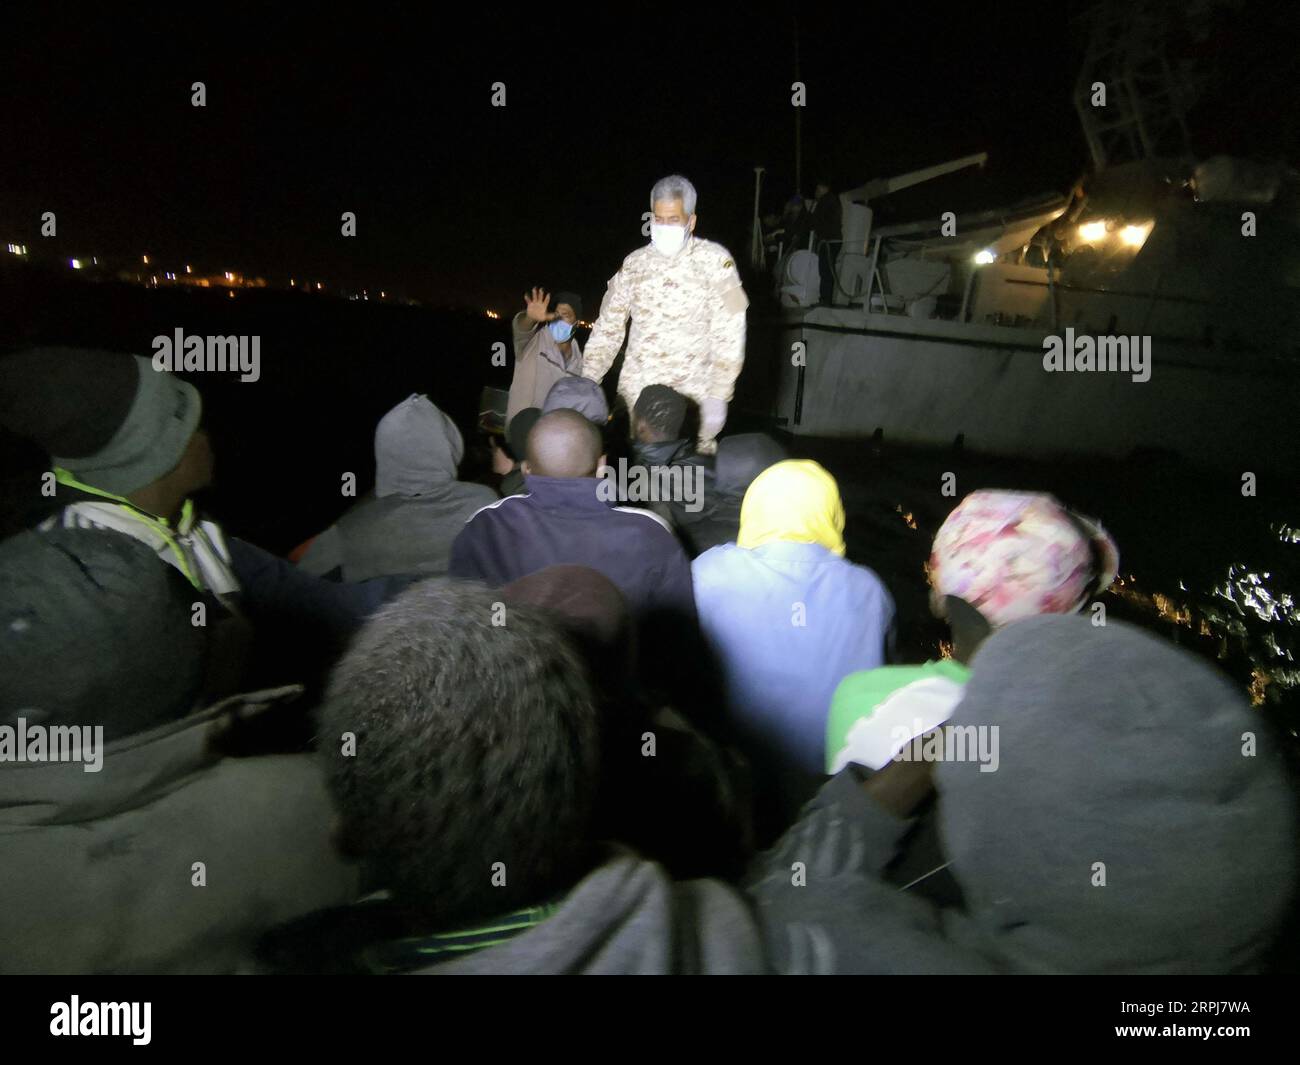 191130 -- TRIPOLI, le 30 novembre 2019 Xinhua -- des migrants sont vus dans un bateau de sauvetage à Tripoli, Libye, le 29 novembre 2019. Vendredi, les garde-côtes libyens ont secouru plus de 200 migrants au large de la côte ouest du pays, a déclaré l Organisation internationale pour les migrations en Libye (OIM Libye). La Libye est devenue un point de départ privilégié pour les migrants espérant traverser la mer Méditerranée vers l’Europe en raison de l’insécurité et du chaos dans ce pays d’Afrique du Nord suite au soulèvement de 2011 qui a renversé l’ancien dirigeant Mouammar Kadhafi. Photo de Hamza Turkia/Xinhua LIBYA-TRIPOLI-MIGRANTS-RESCUE PUBLICATIONxNOTxINxCH Banque D'Images